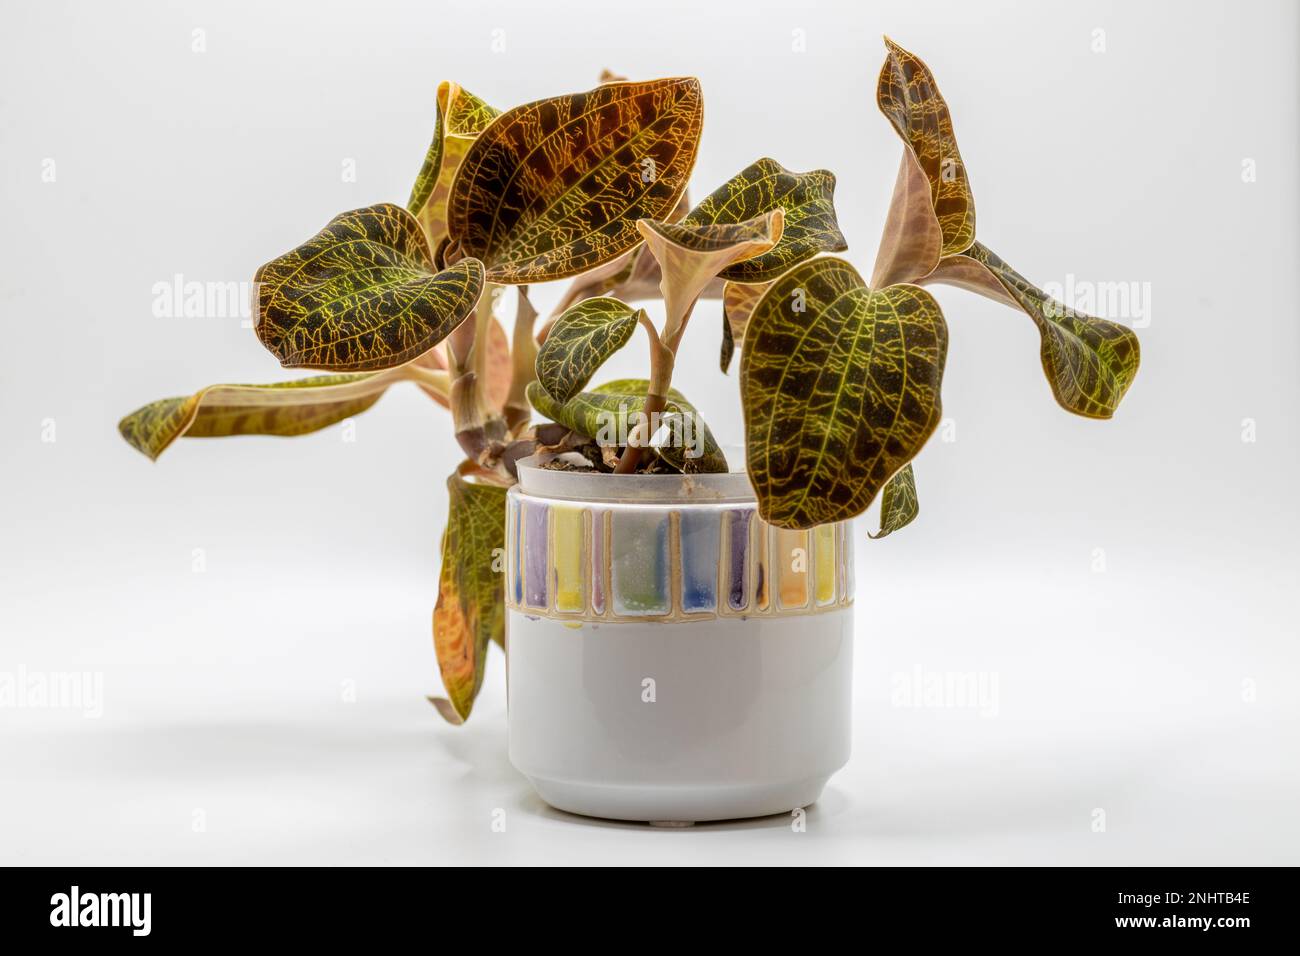 Vollformat-Makro-Studio-Aufnahme einer Blumentopf-Orchidee (Macodes petola), bekannt für ihre glitzernden goldenen Blattvenen, die Blitzschlag ähneln Stockfoto